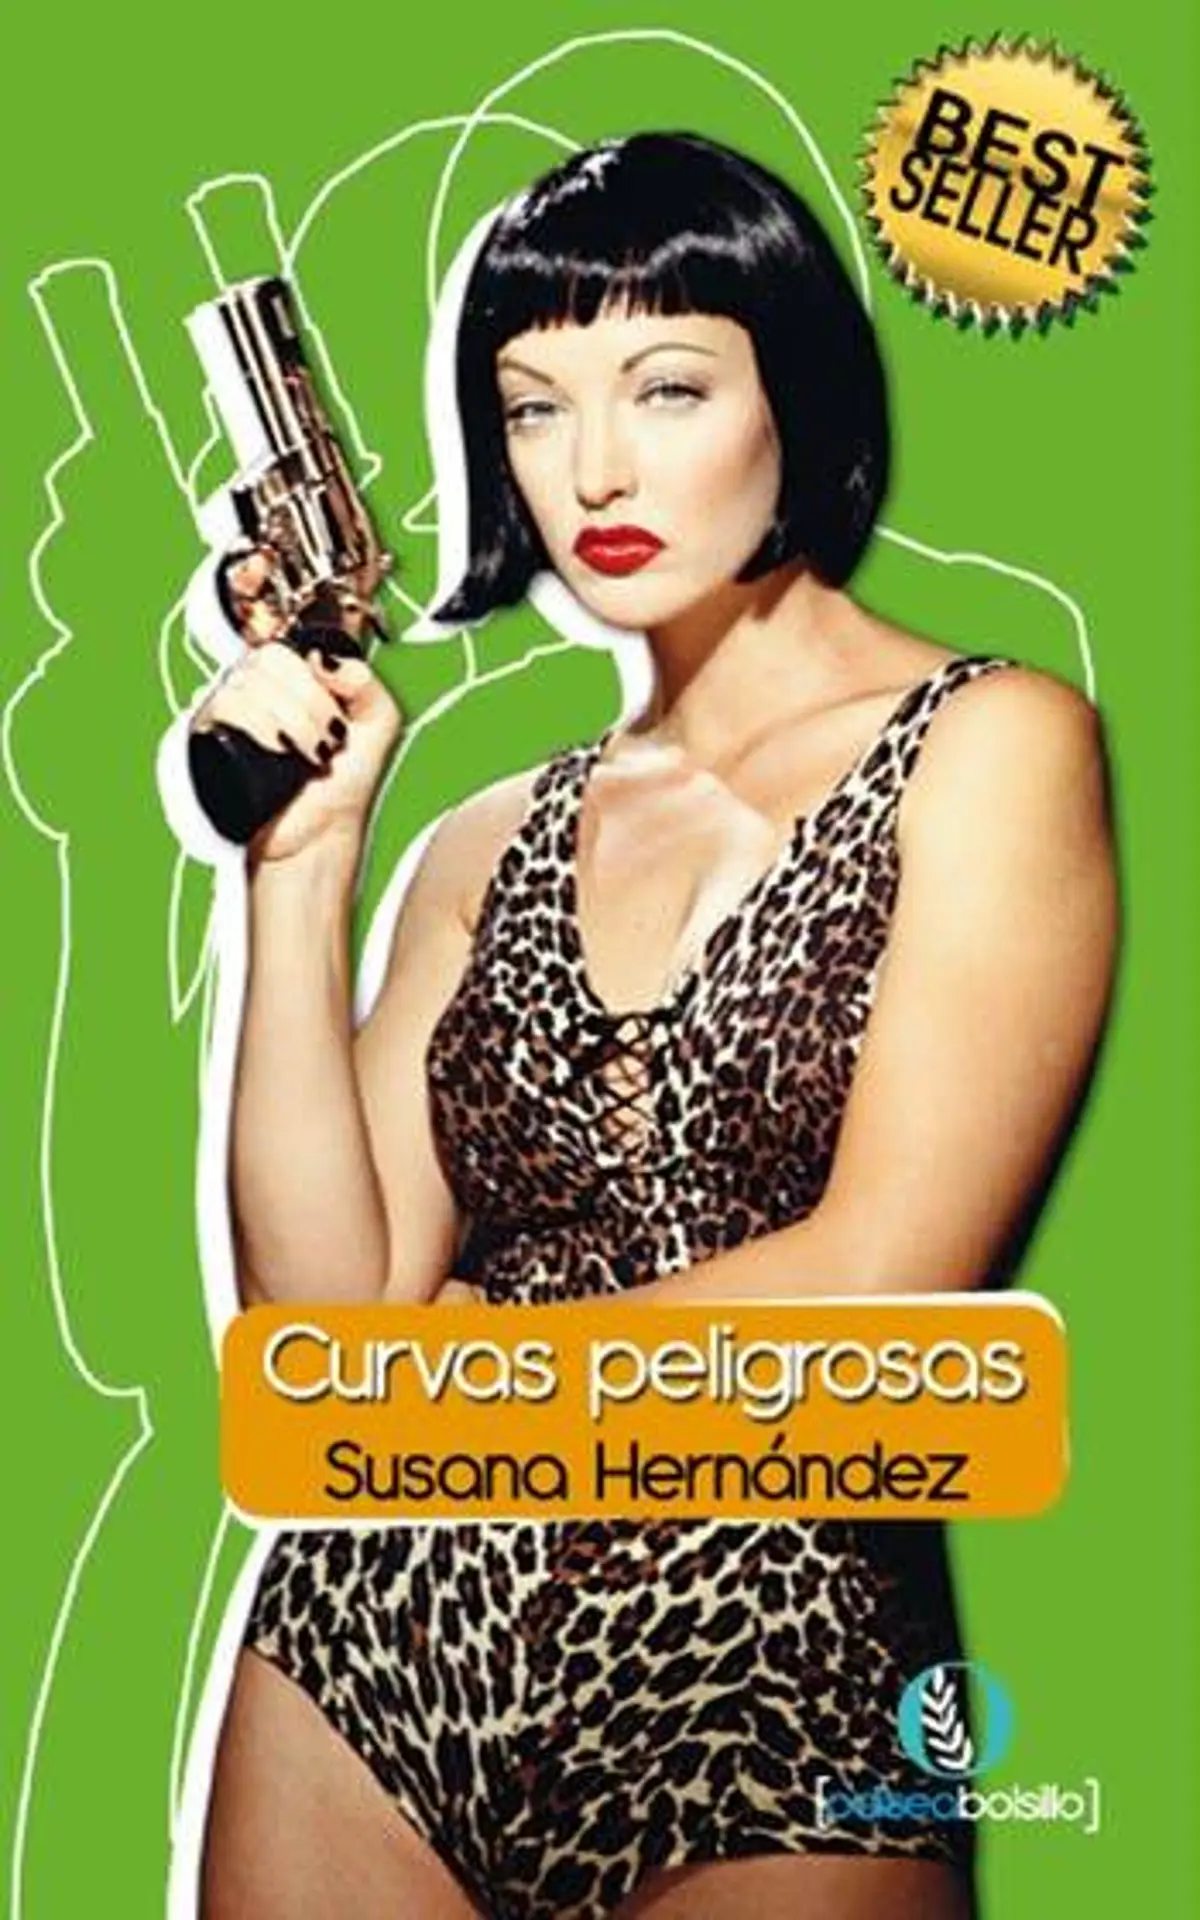 Serie Curvas peligrosas de Susana Hernández